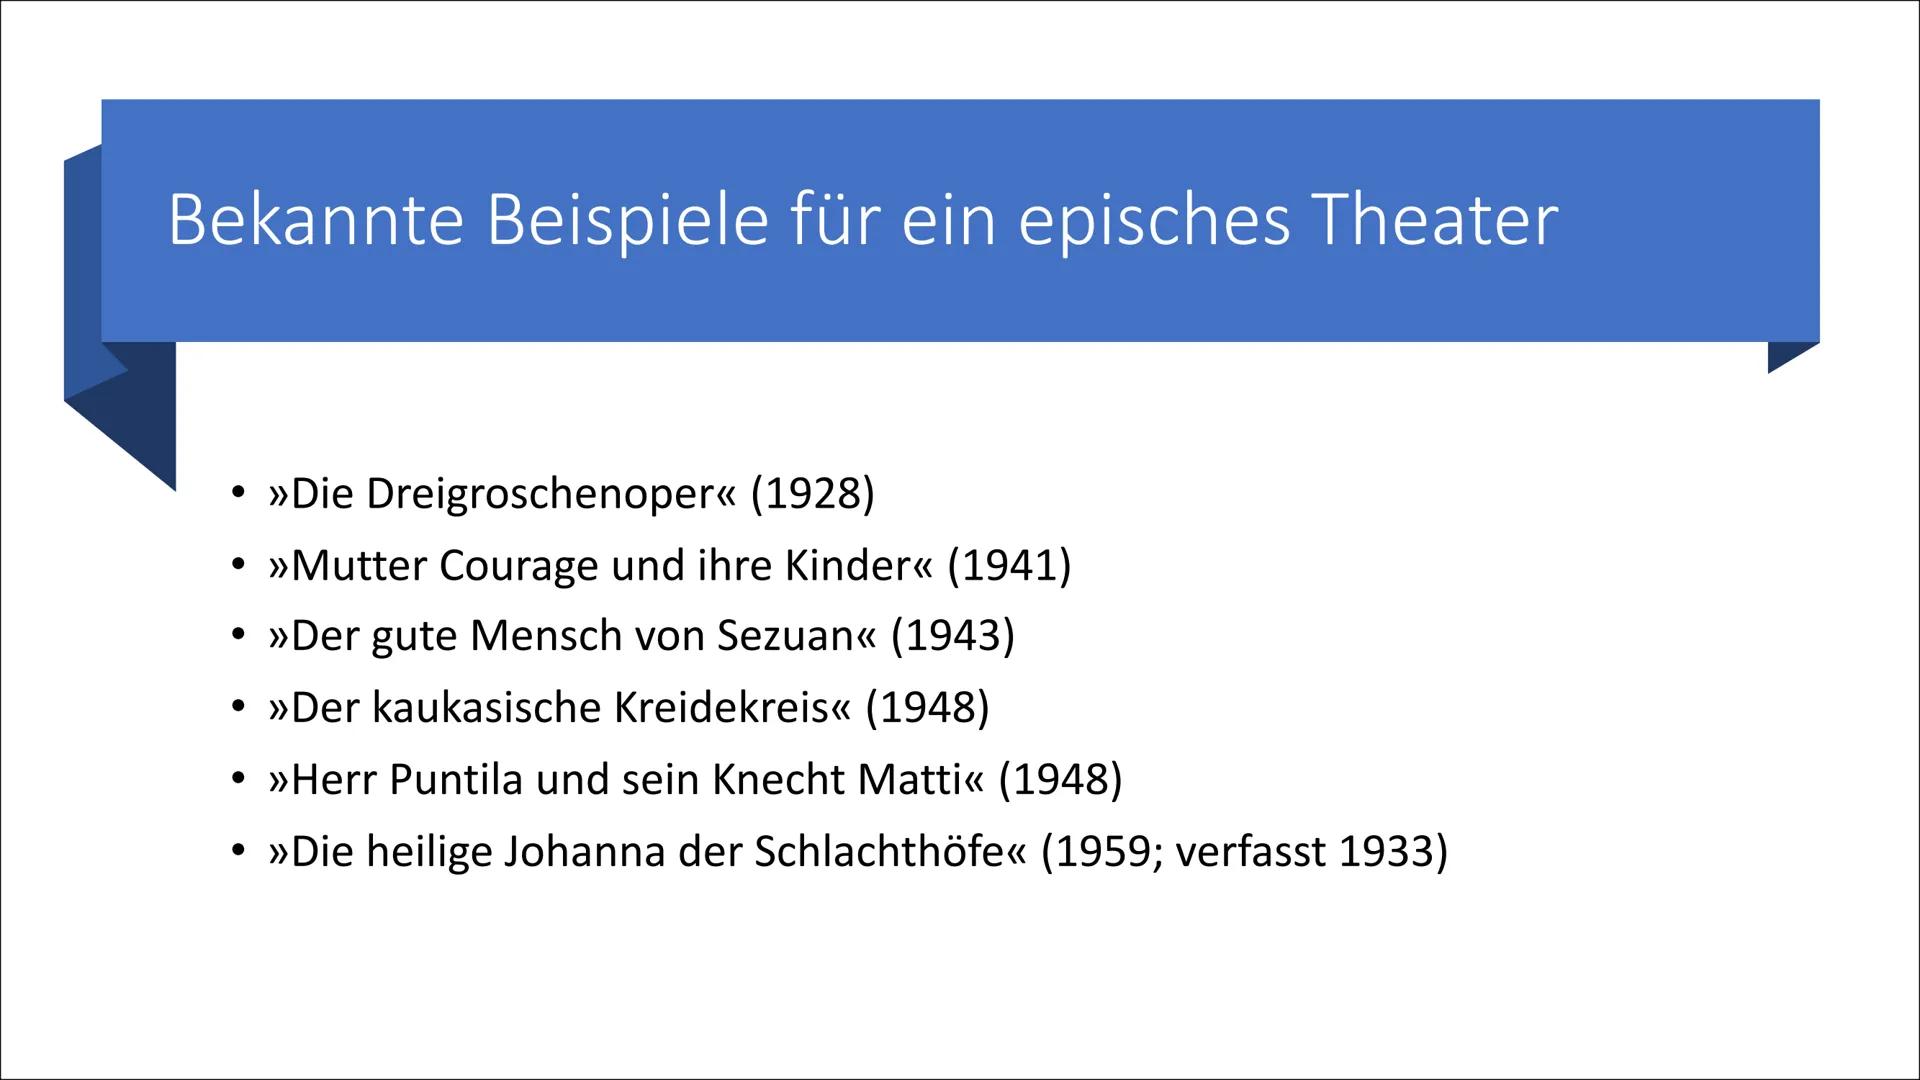 Episches Theater
Bertolt Brecht
Eine Präsentation im Deutsch Kurs EF
G1 PAET
Lara, Elayne, Finn und Henning www
****
Inhalte unserer Präsent